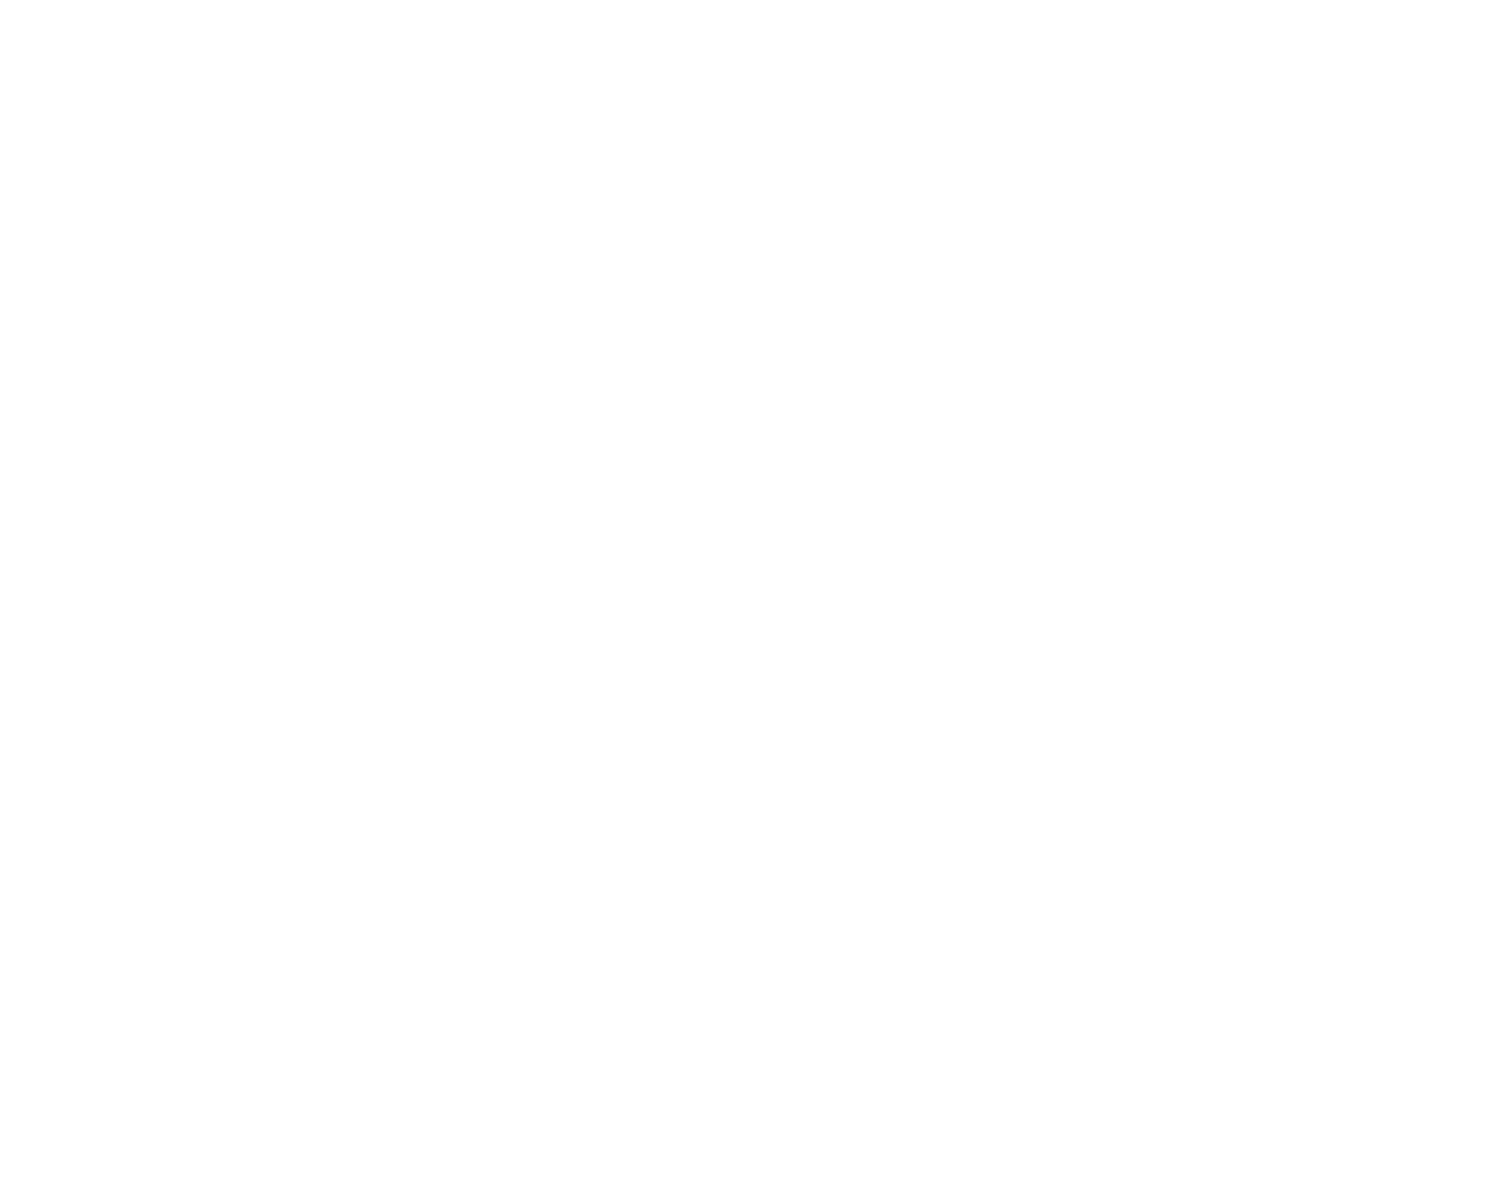 Jaffari Tabligh Committee